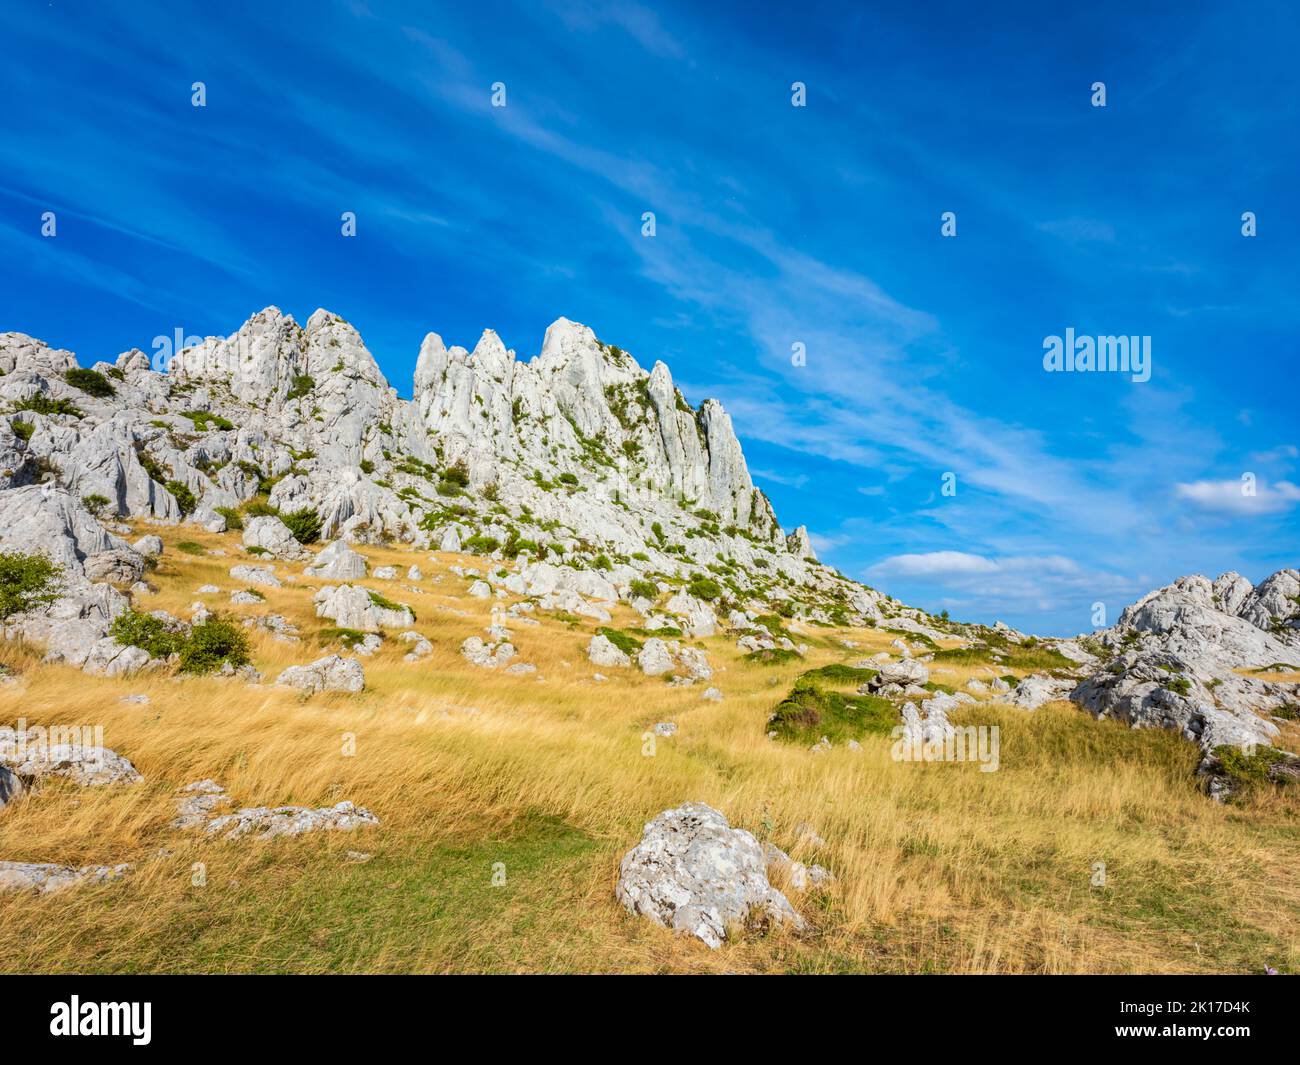 Tulove grede ridge mountain in Croatia Europe Stock Photo